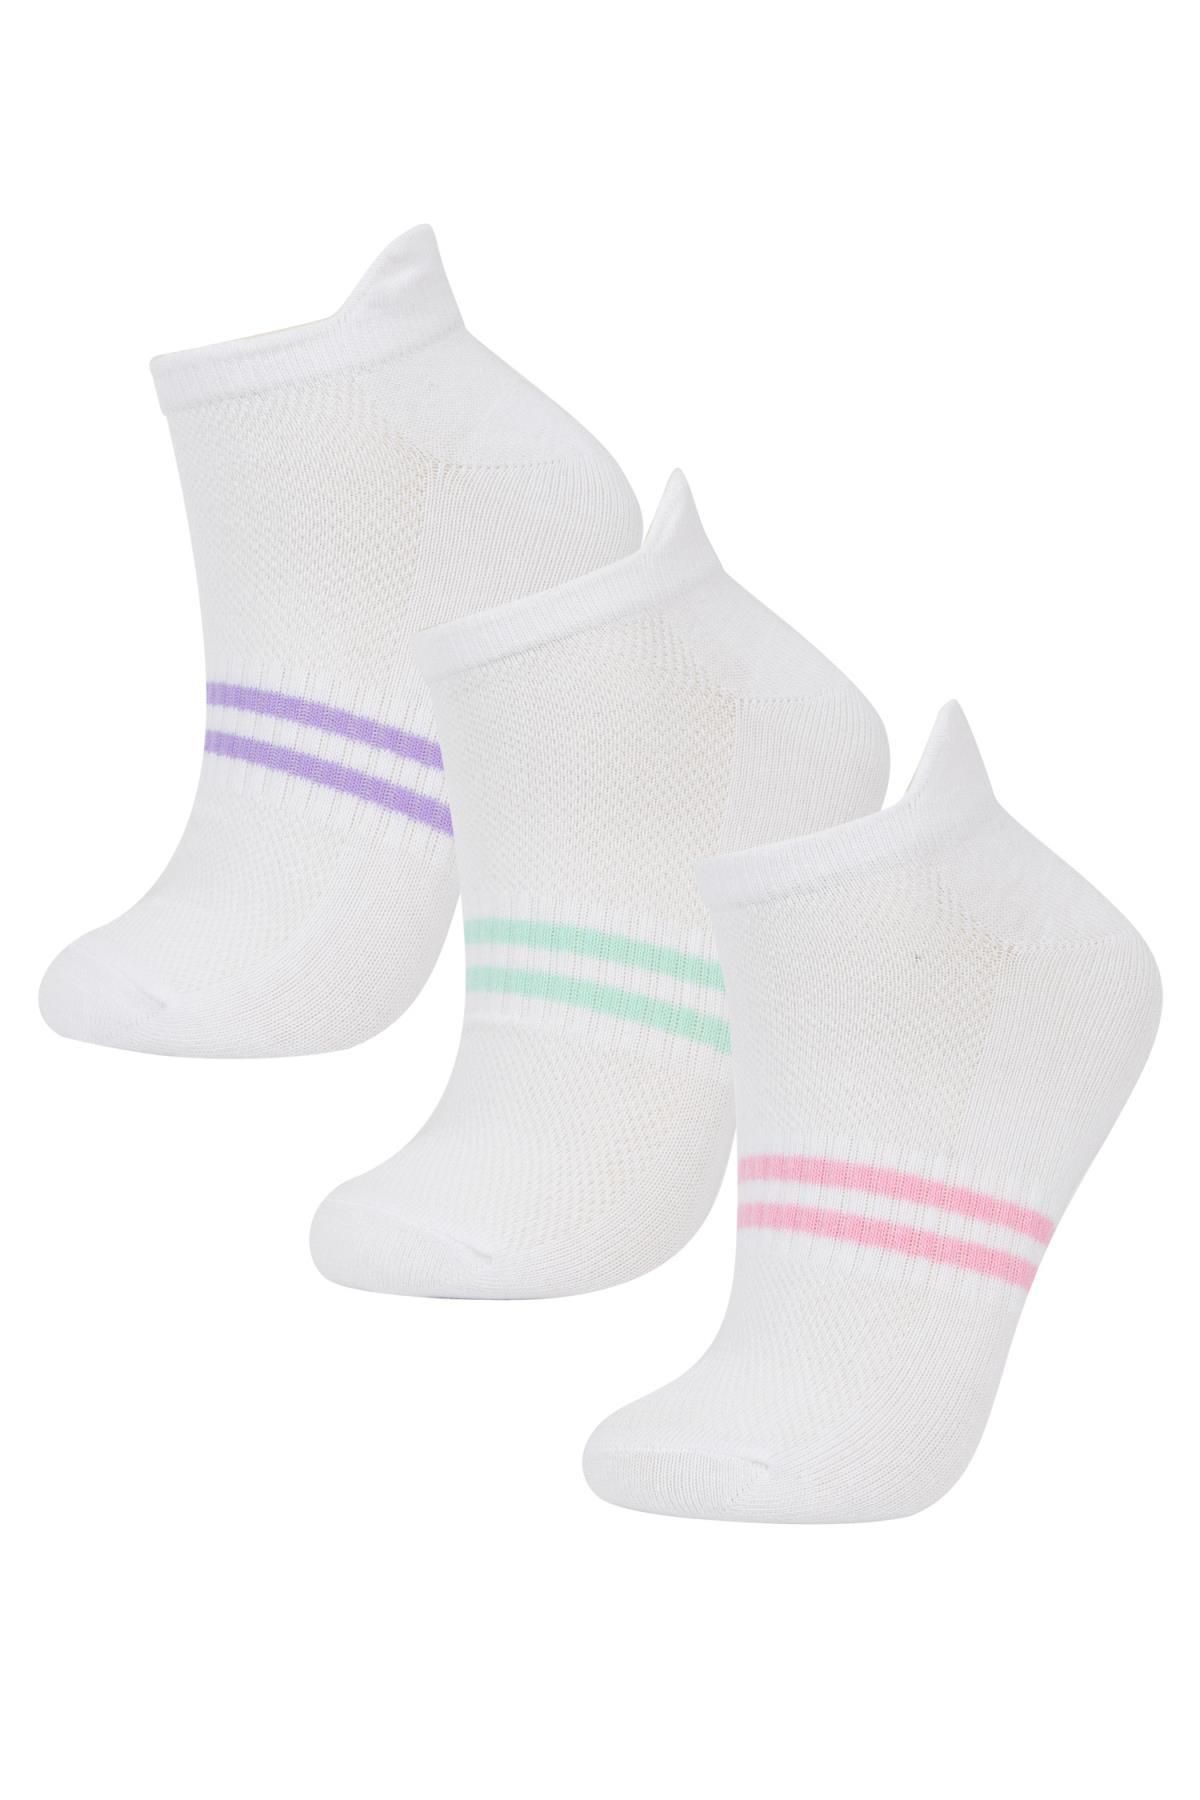 Defacto Kadın 3lü Pamuklu Patik Çorap B6011axns